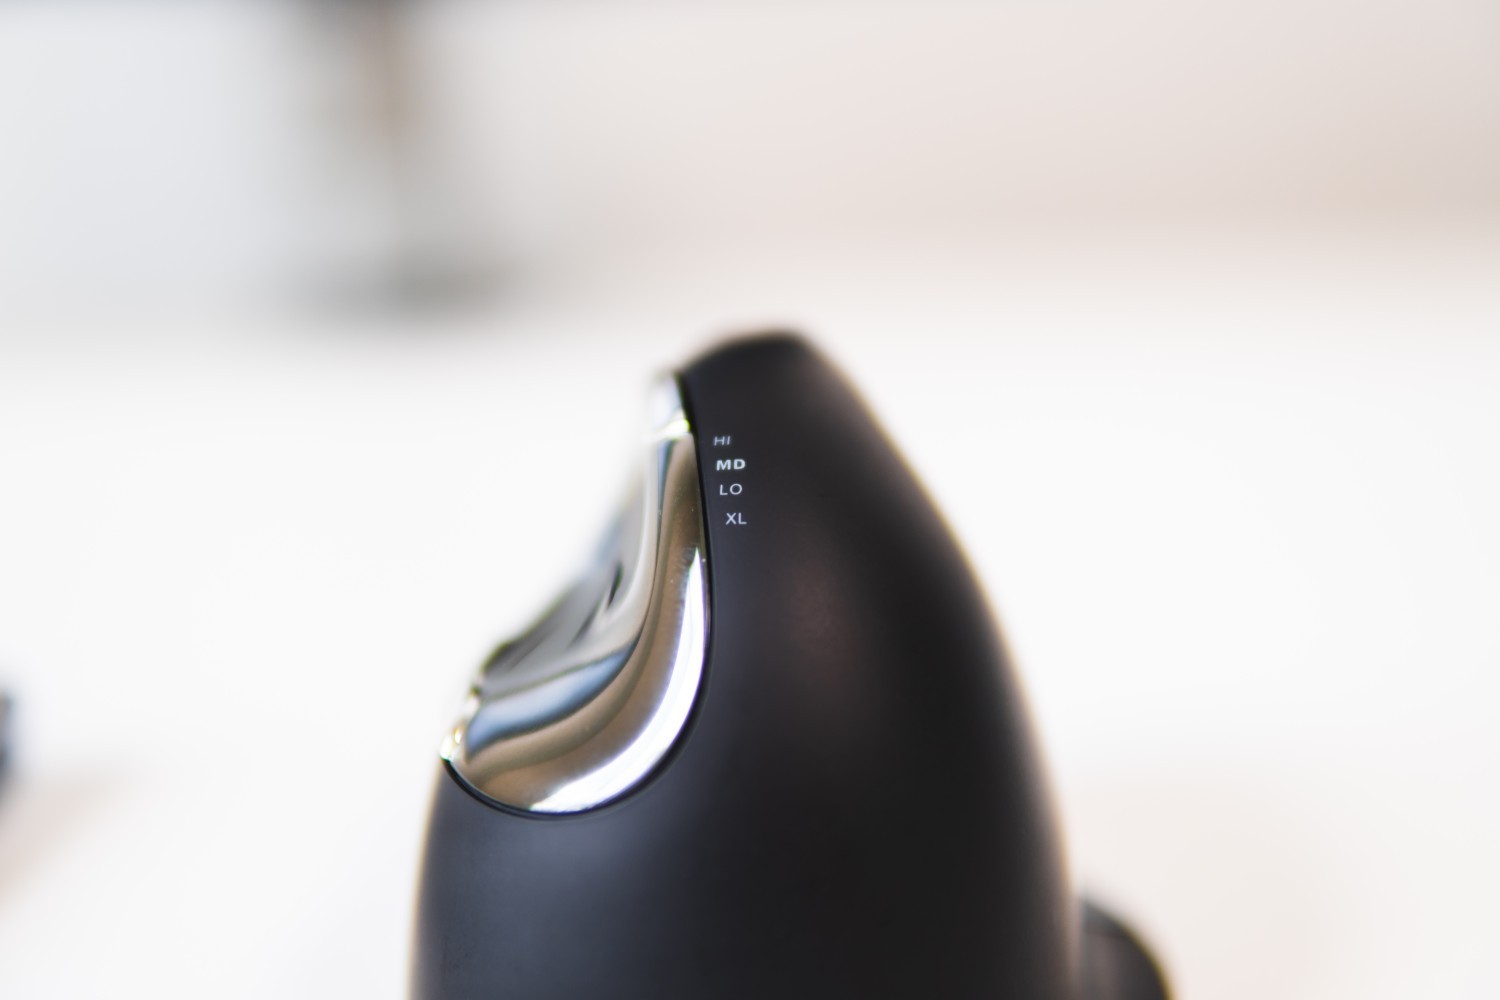 Souris ergonomique verticale Evoluent 4 Sans fil droitier, noir / bleu